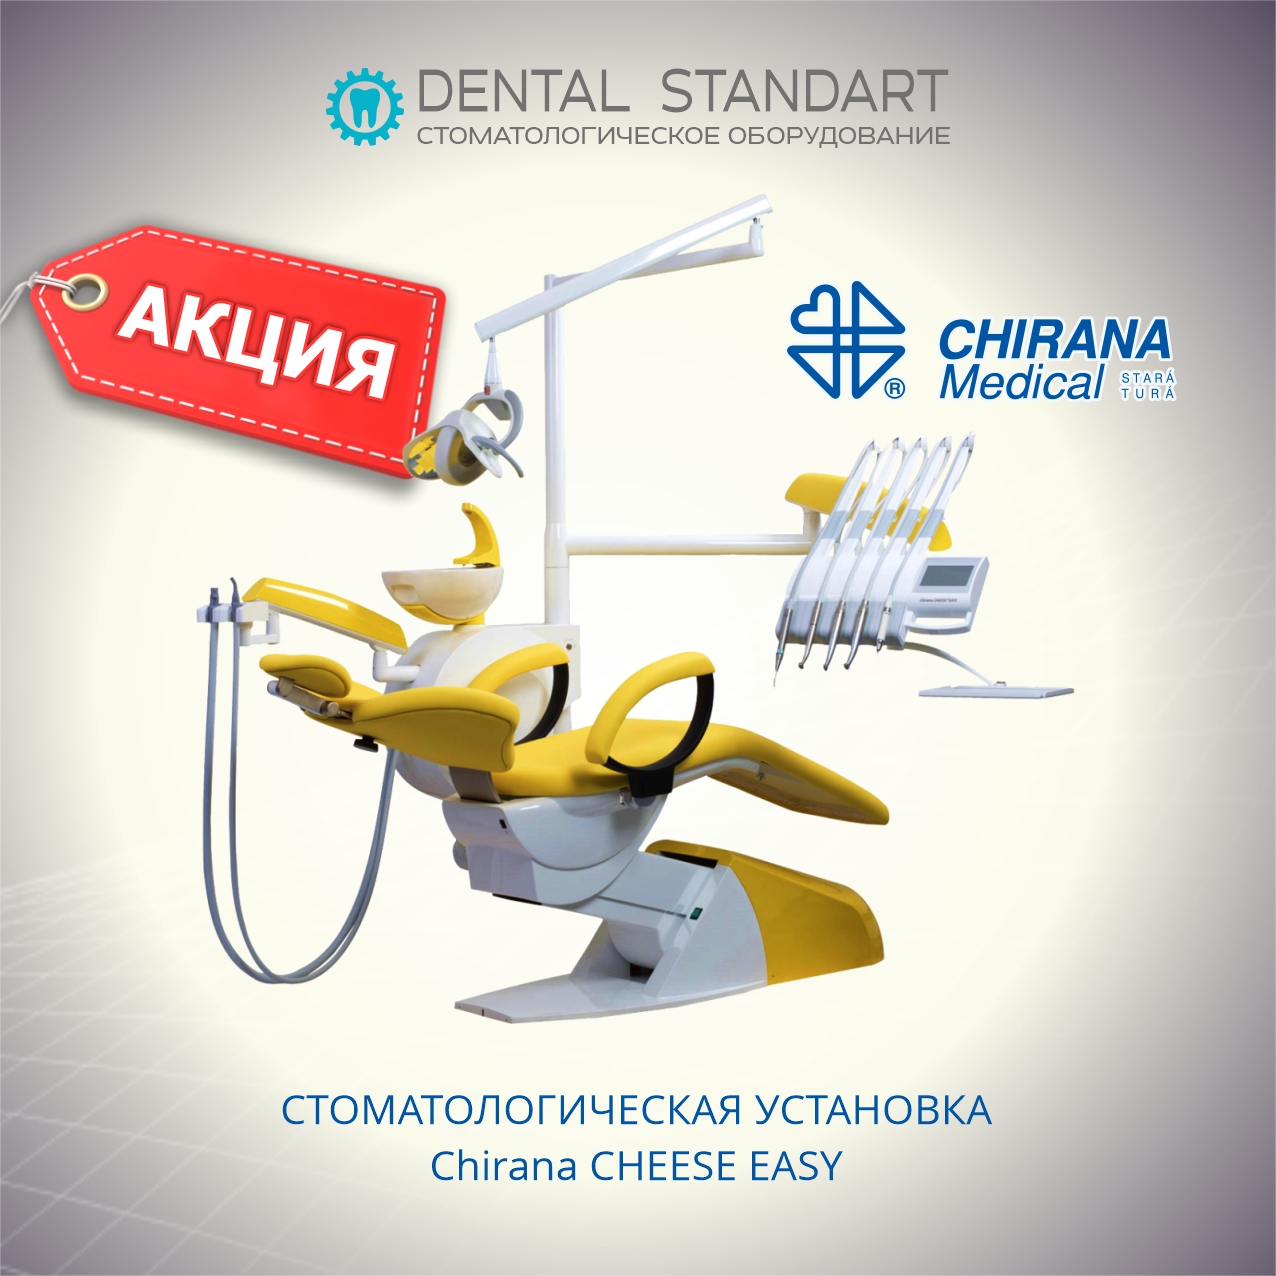 Стоматологические установки Chirana Medical (Словакия)